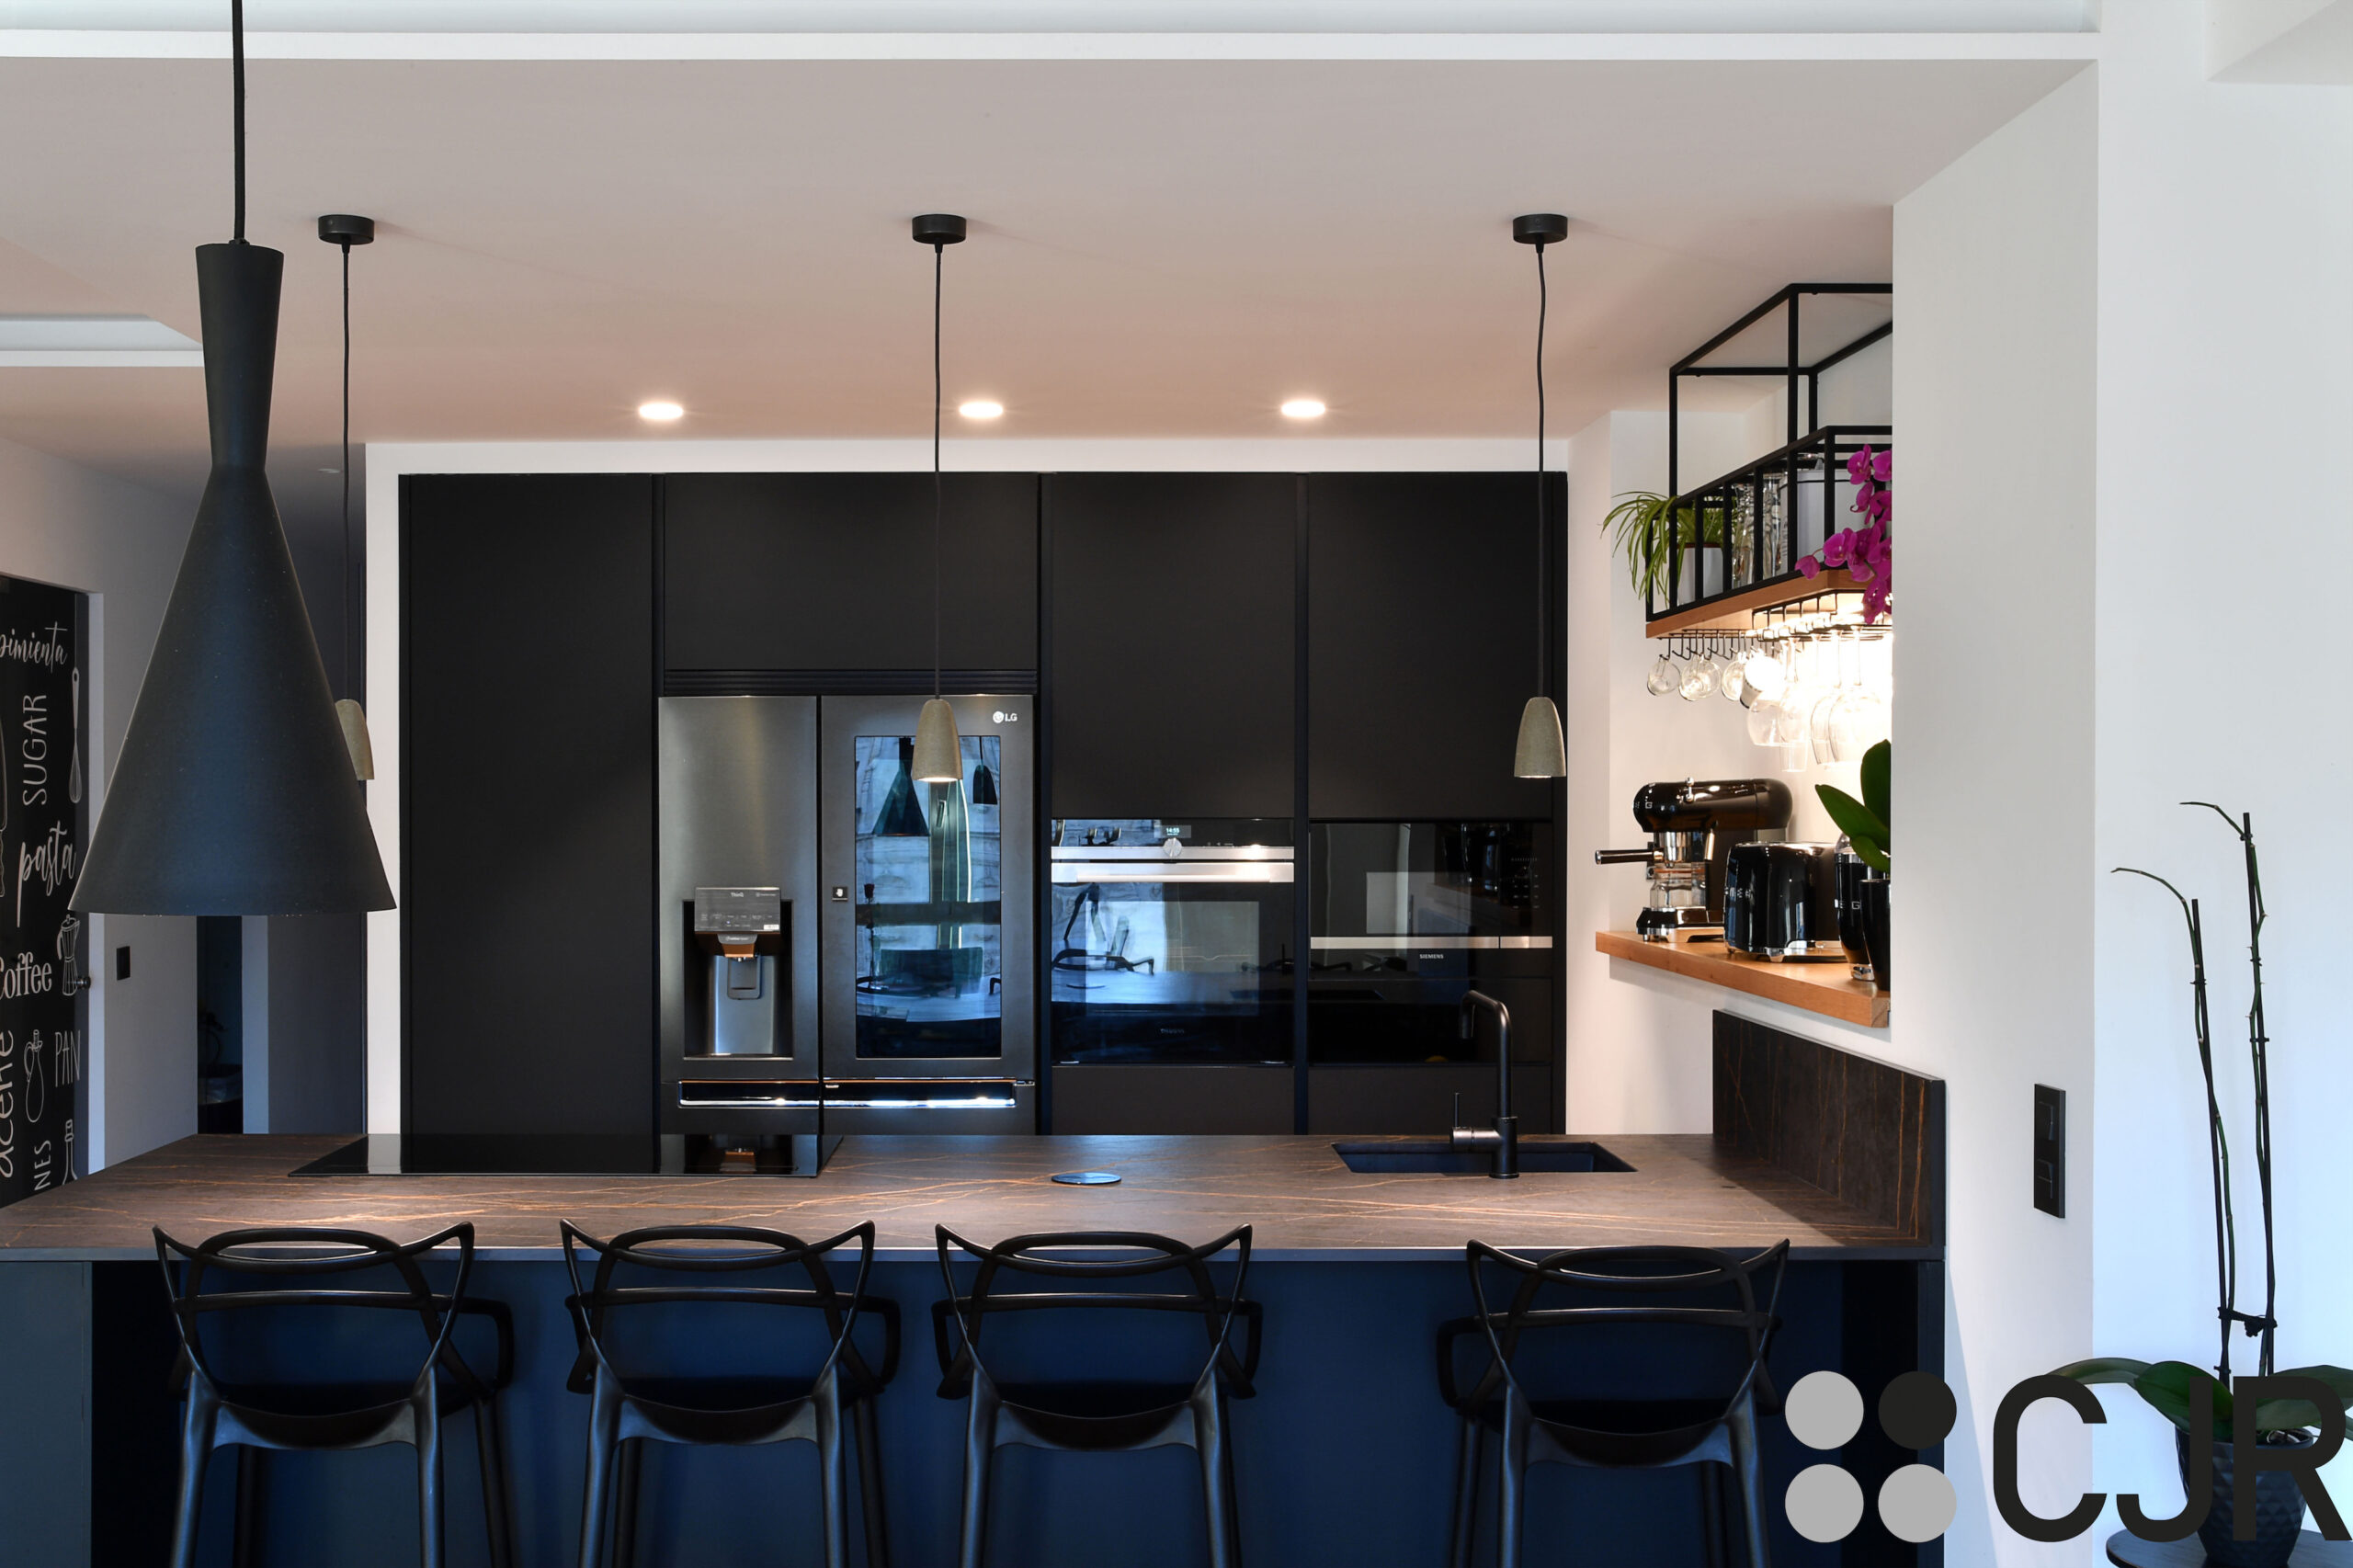 cocina abierta al salon moderna en color negro cjr